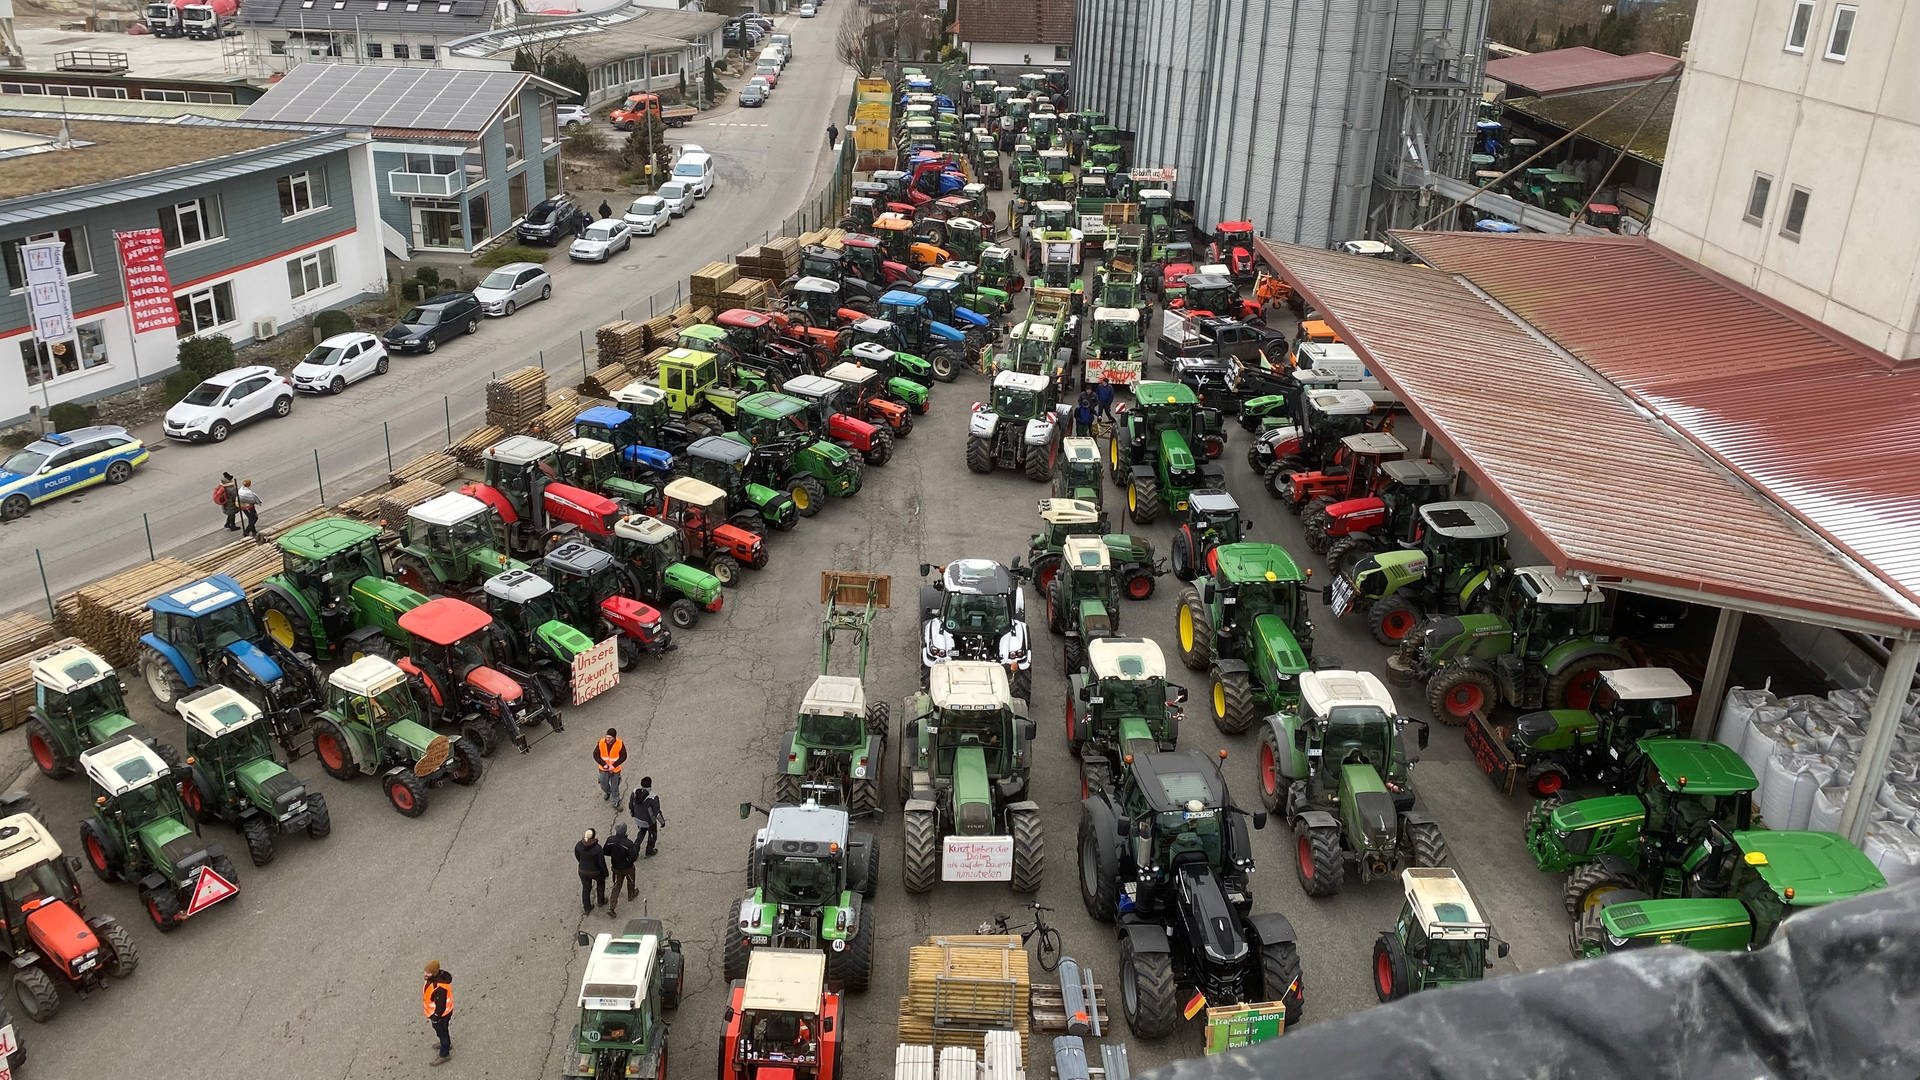 ++ Innenministerium spricht von 25.000 Fahrzeugen ++ Bauern-Boykott auf Freiburger Münstermarkt ++ Traktoren auf A81 ++